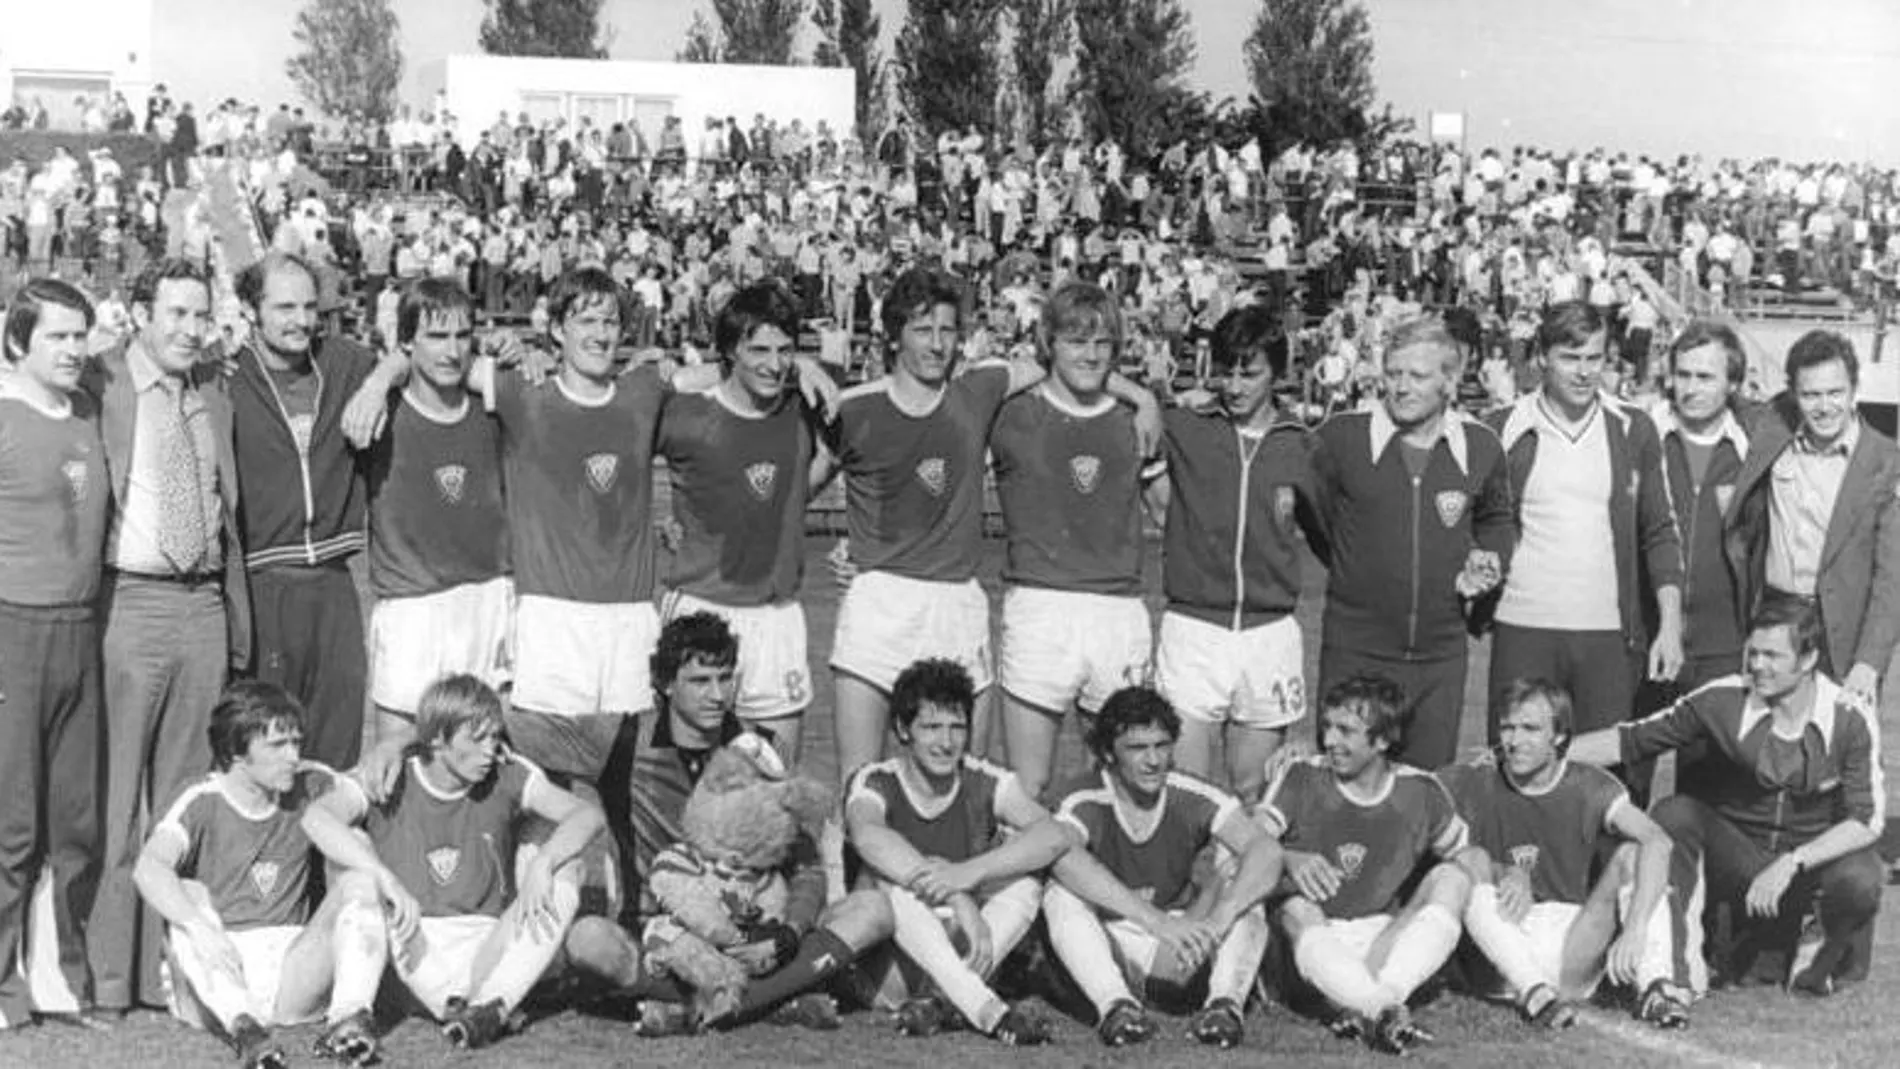 Plantilla del Dinamo de Berlín en 1979